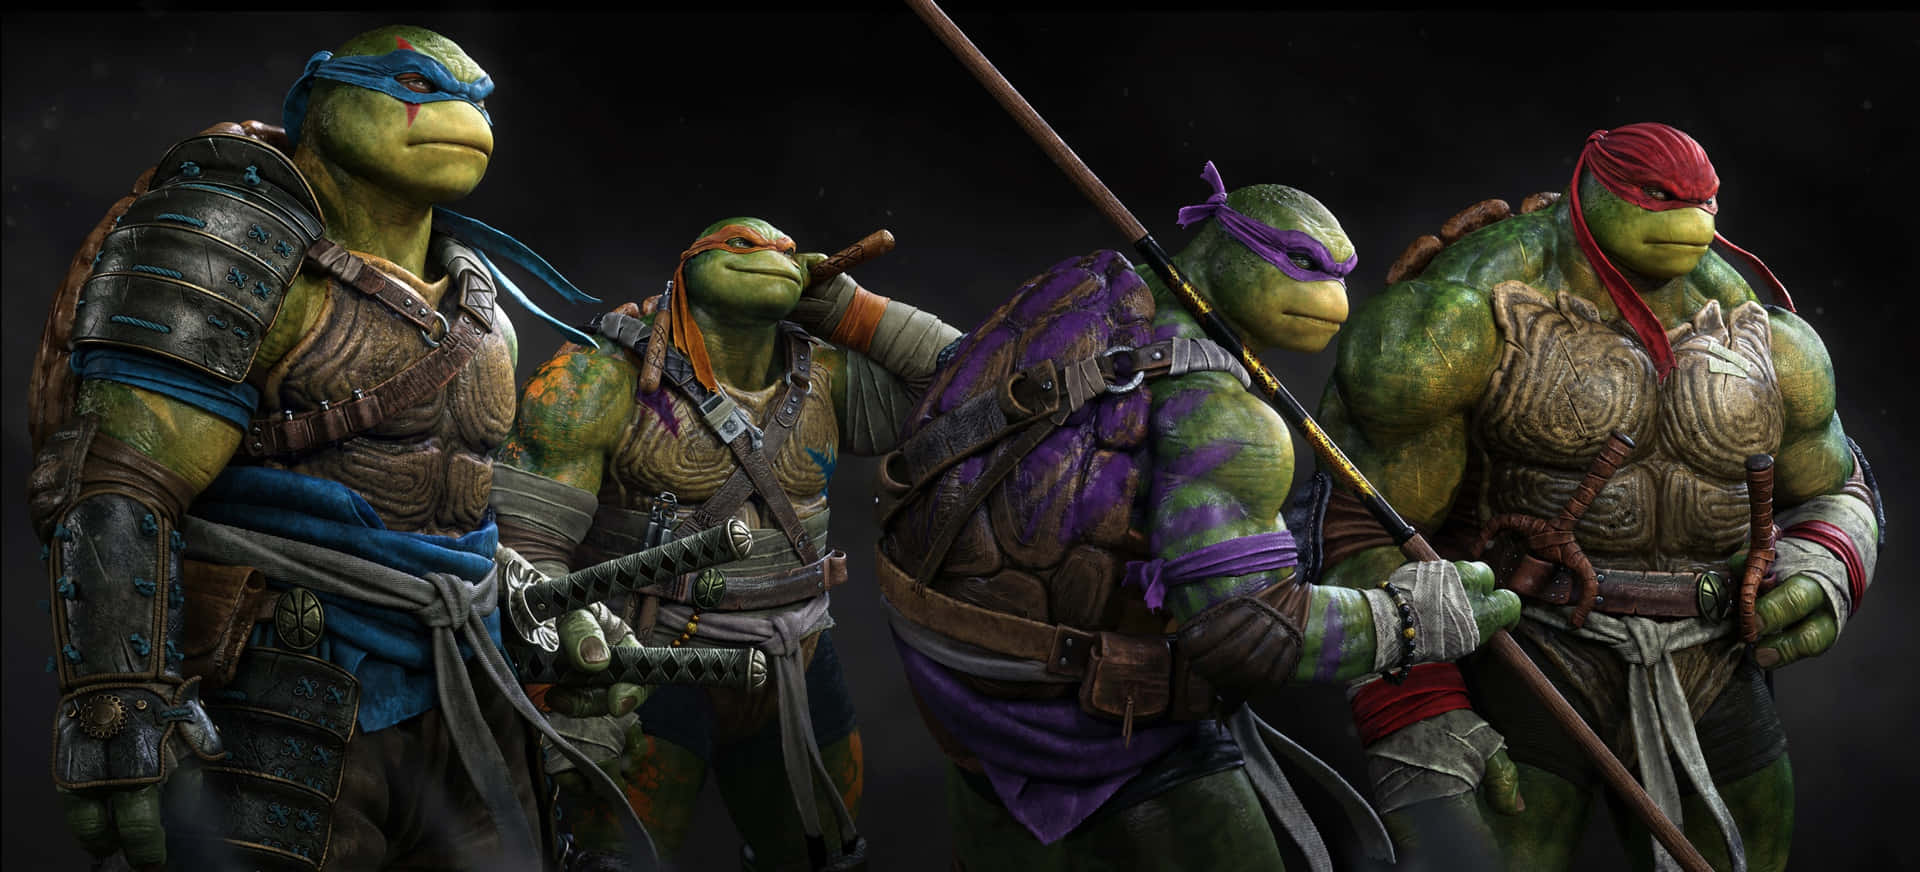 Heltepå Halvdelen Af Et Skjold: Leonardo, Raphael, Donatello Og Michelangelo!